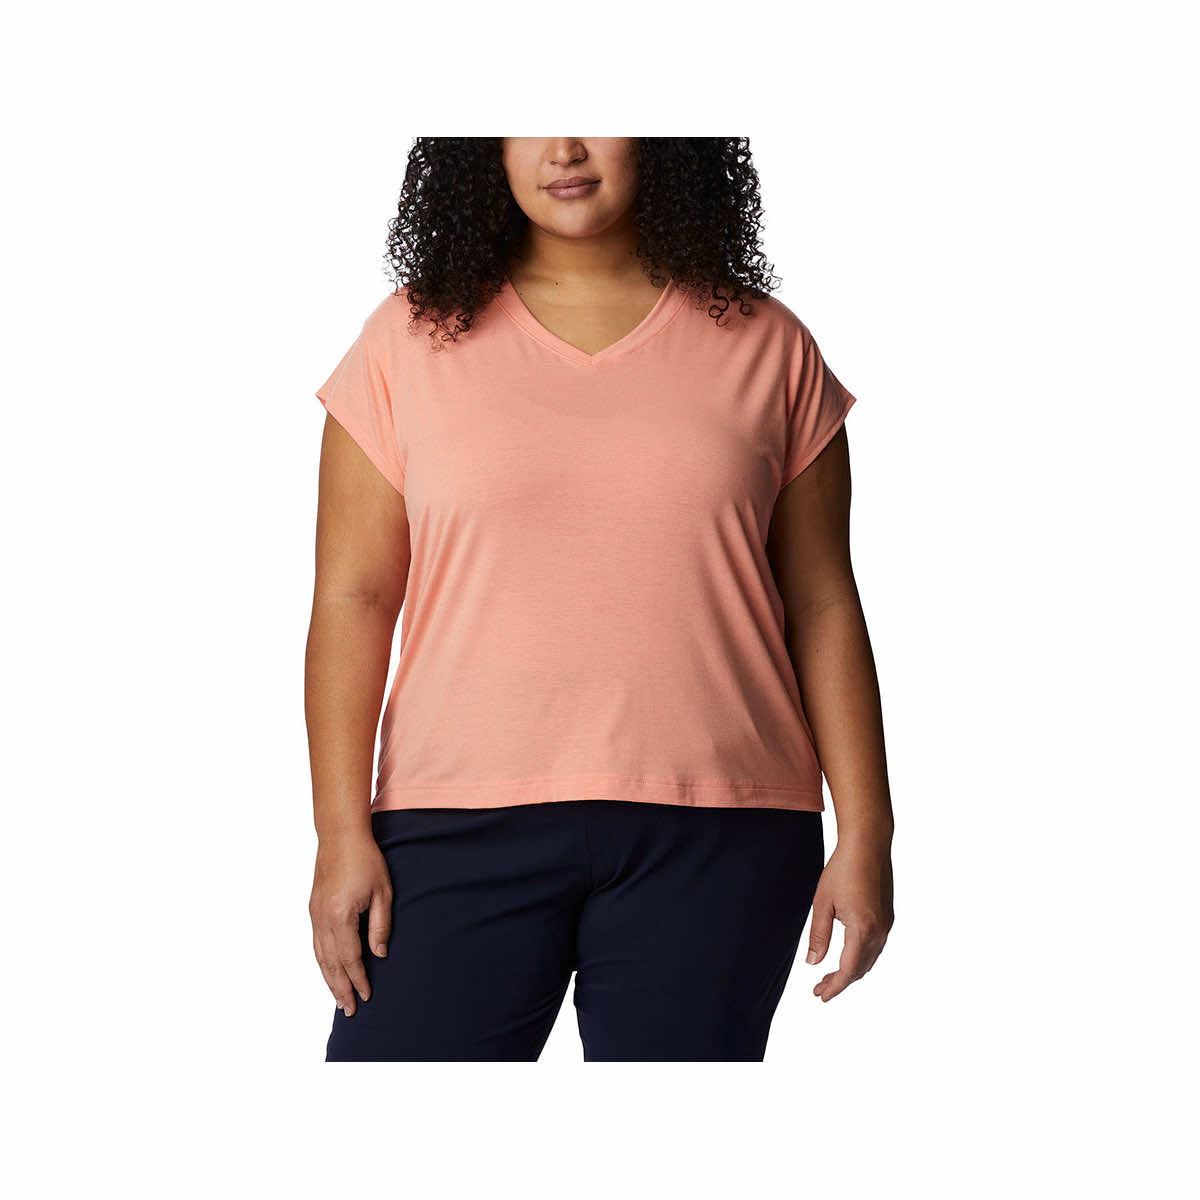  Women's Boundless Beauty T- Shirt - Curvy